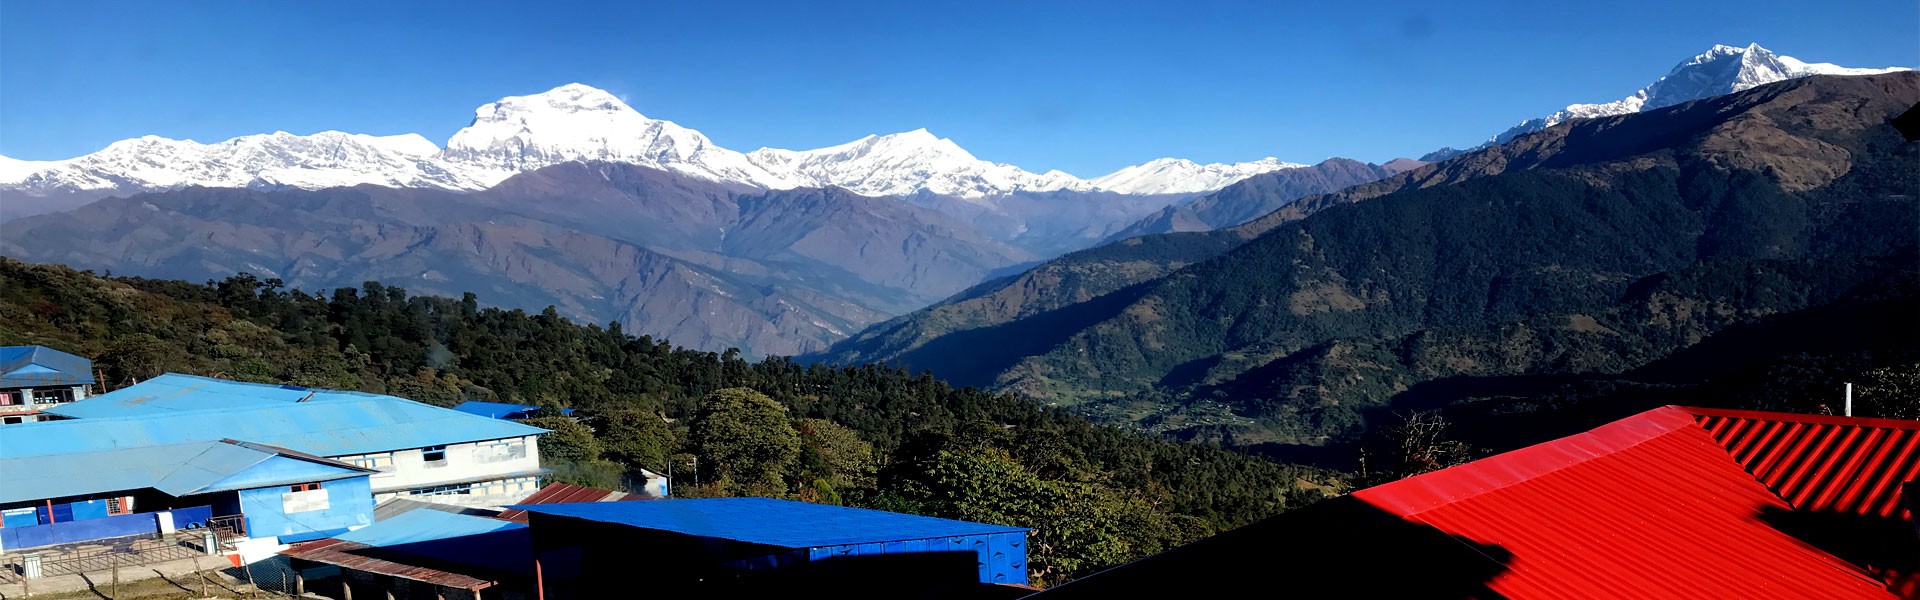 View from Ghorepani Trek